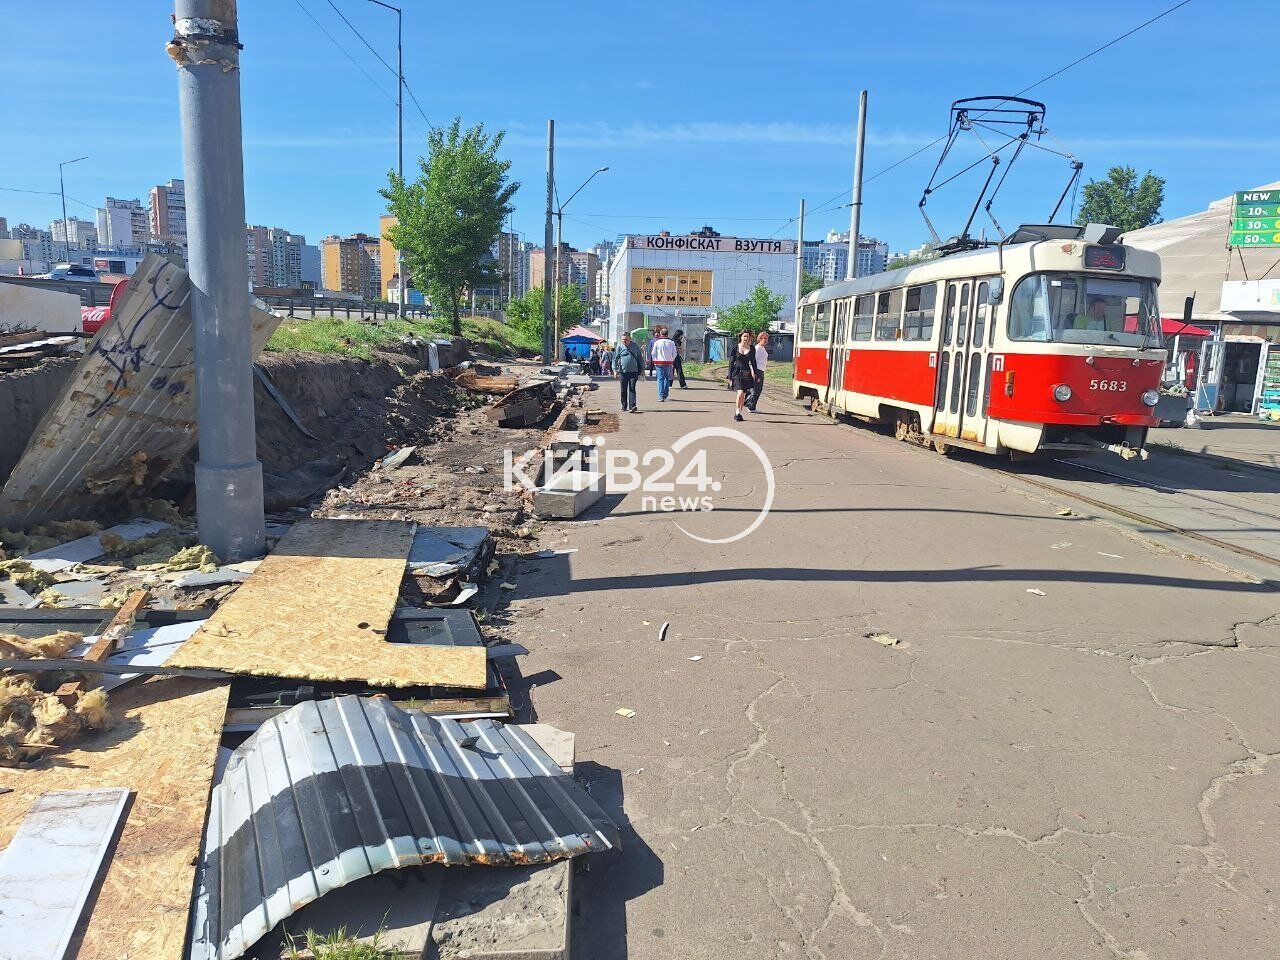 Через ДТП із постраждалим: у Києві на Позняках почали демонтаж МАФів на кінцевій зупинці трамваїв. Фото